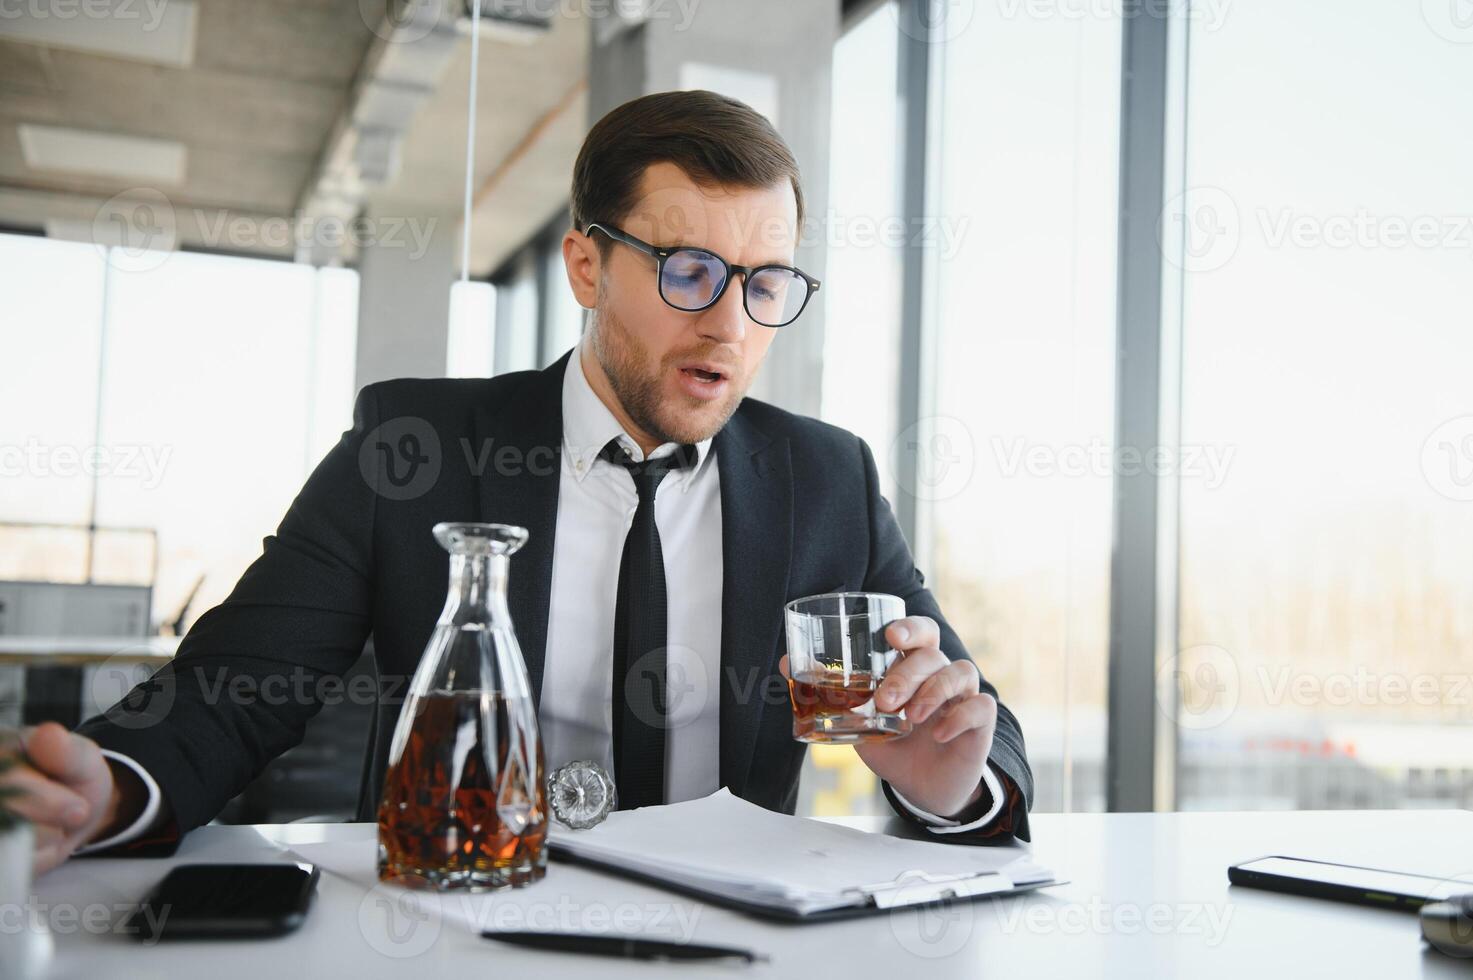 alkoholism på arbete. trött anställd dricka alkohol på arbetsplats, kan inte hantera påfrestning. foto